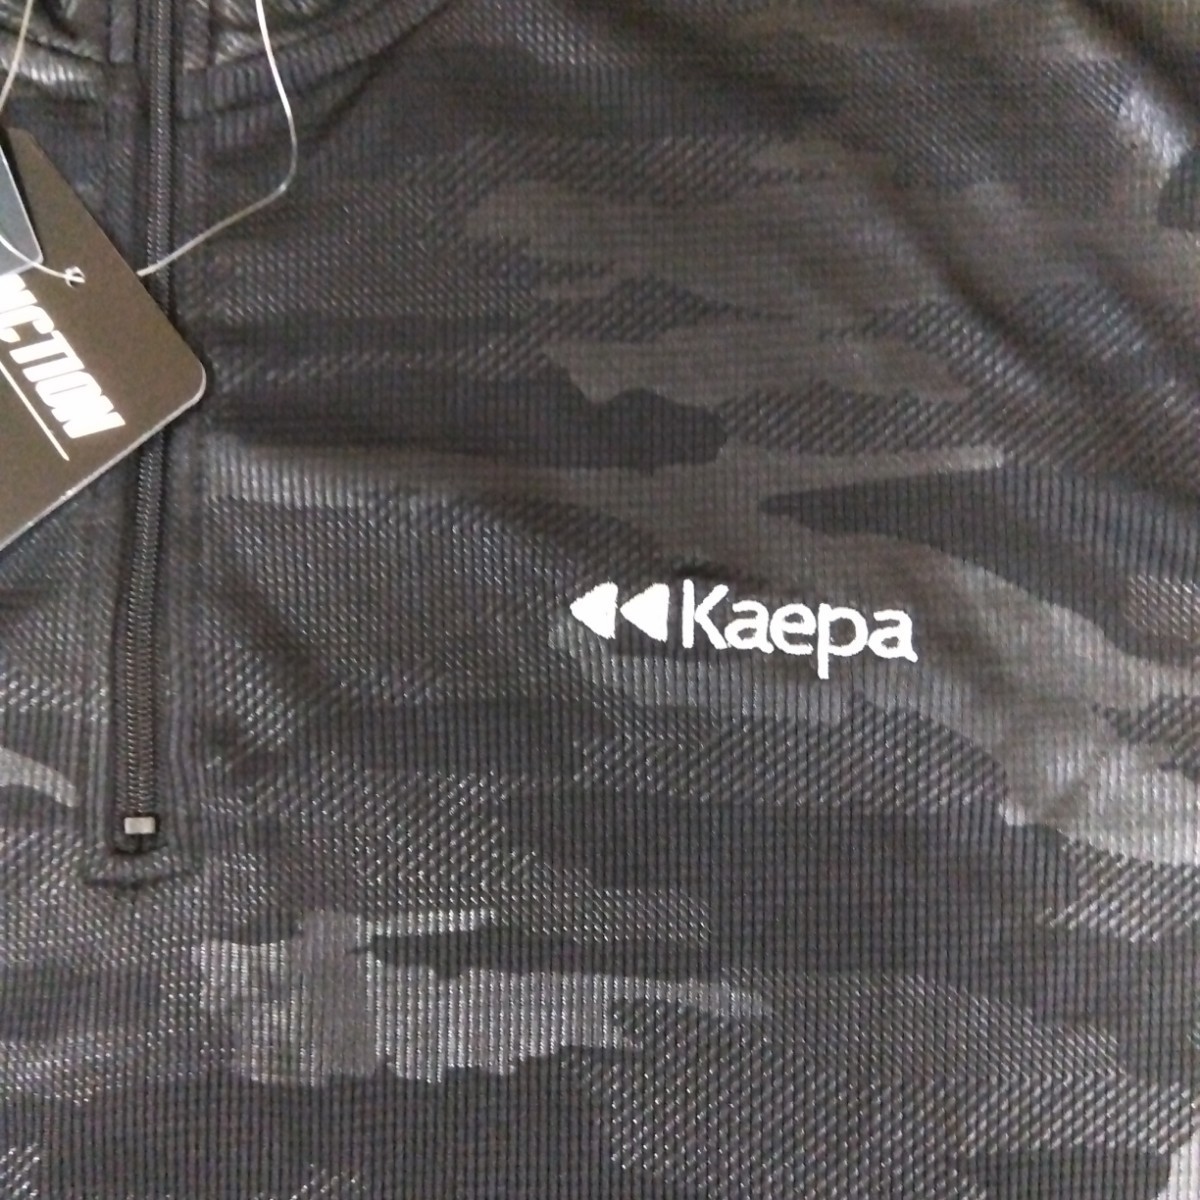 L ③Kaepa ケイパ 新品 半袖ポロシャツ 襟付きトップス ハーフジップ 黒 メンズ紳士 アウトドア スポーツ ゴルフウェア ドライ UV対策 golf